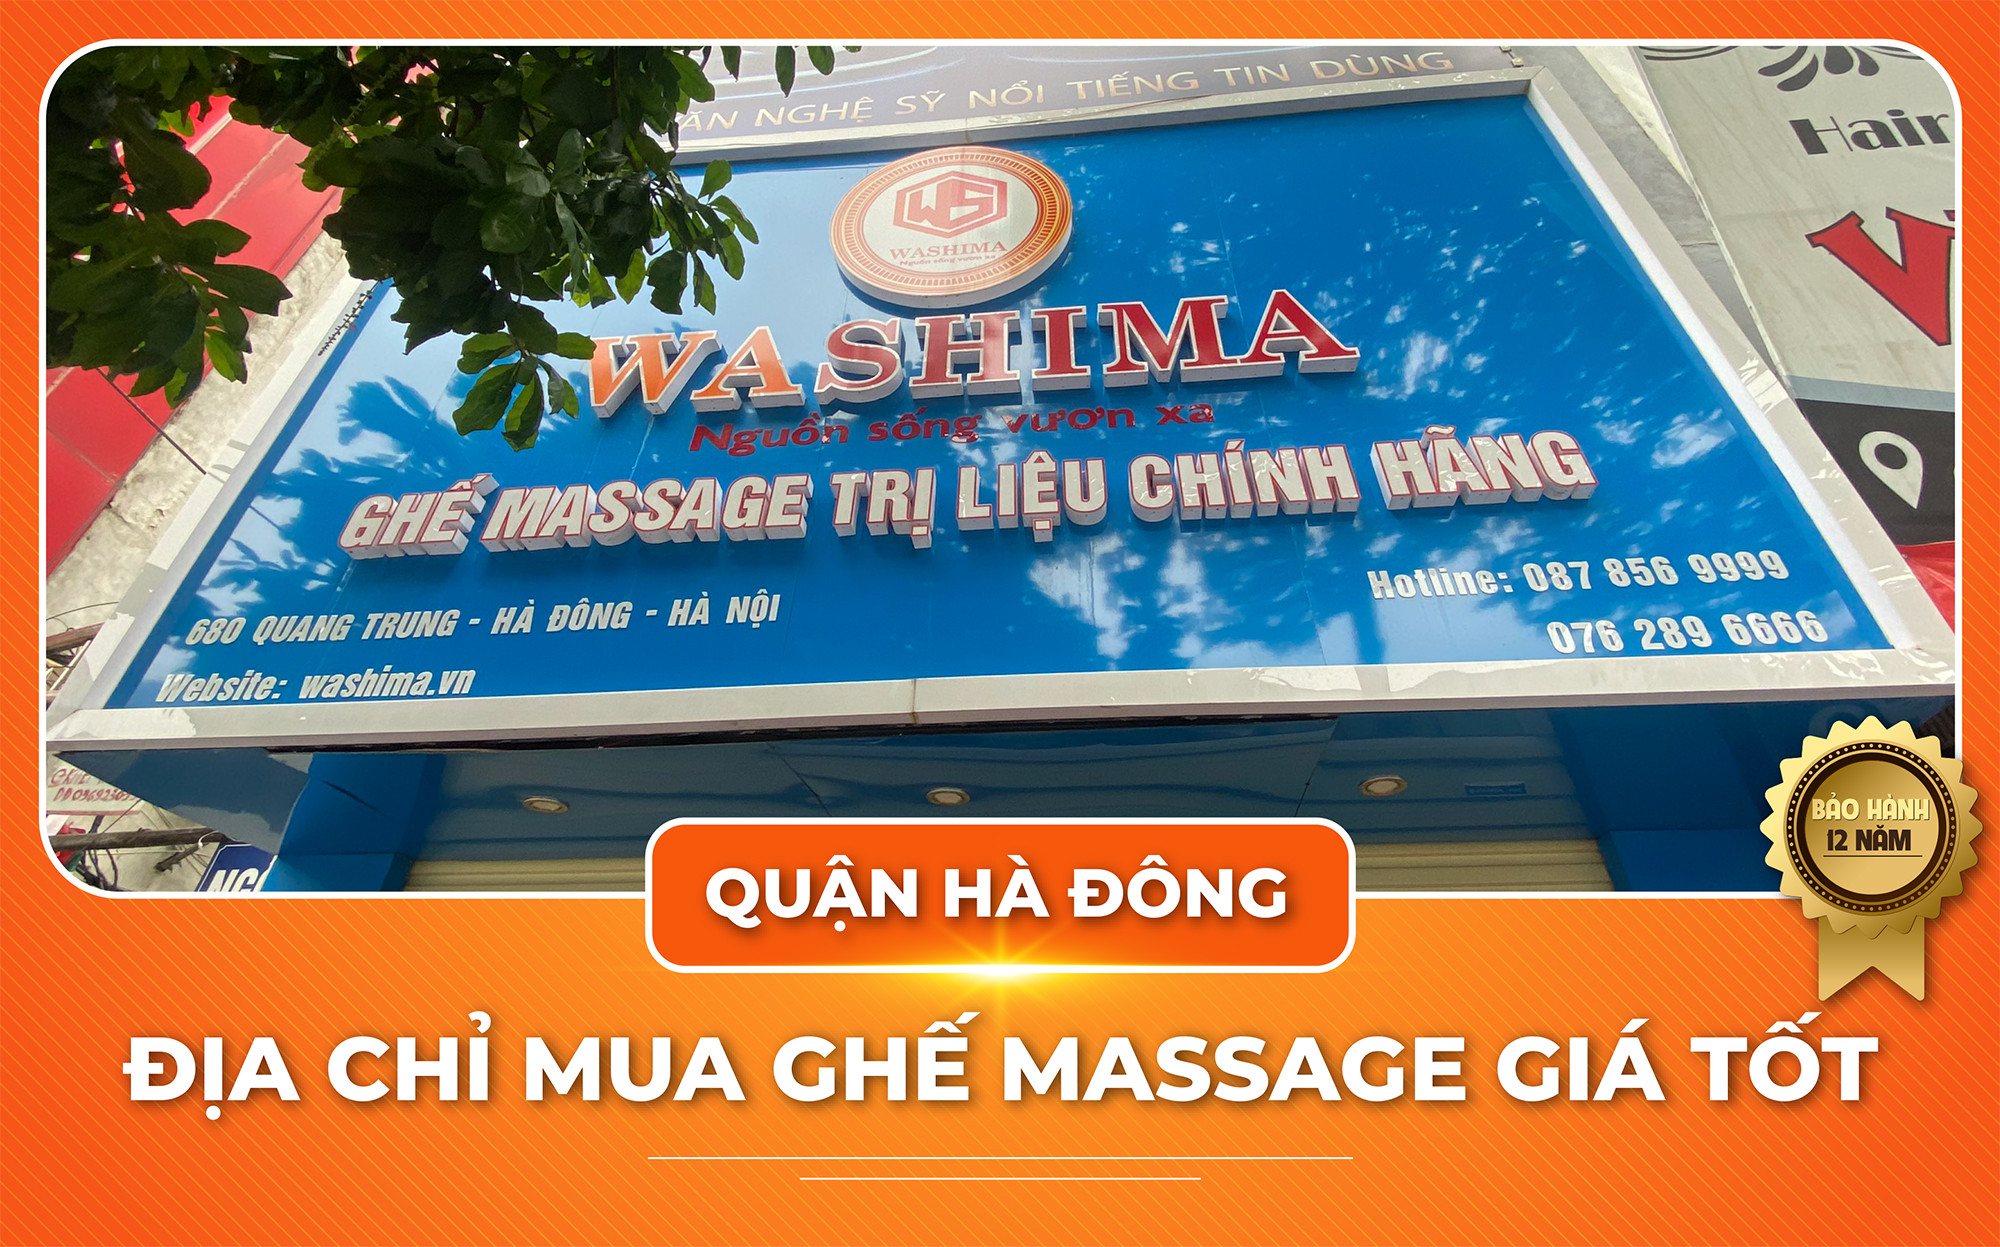 Mua ghế massage giá tốt tại quận Hà Đông - Hà Nội